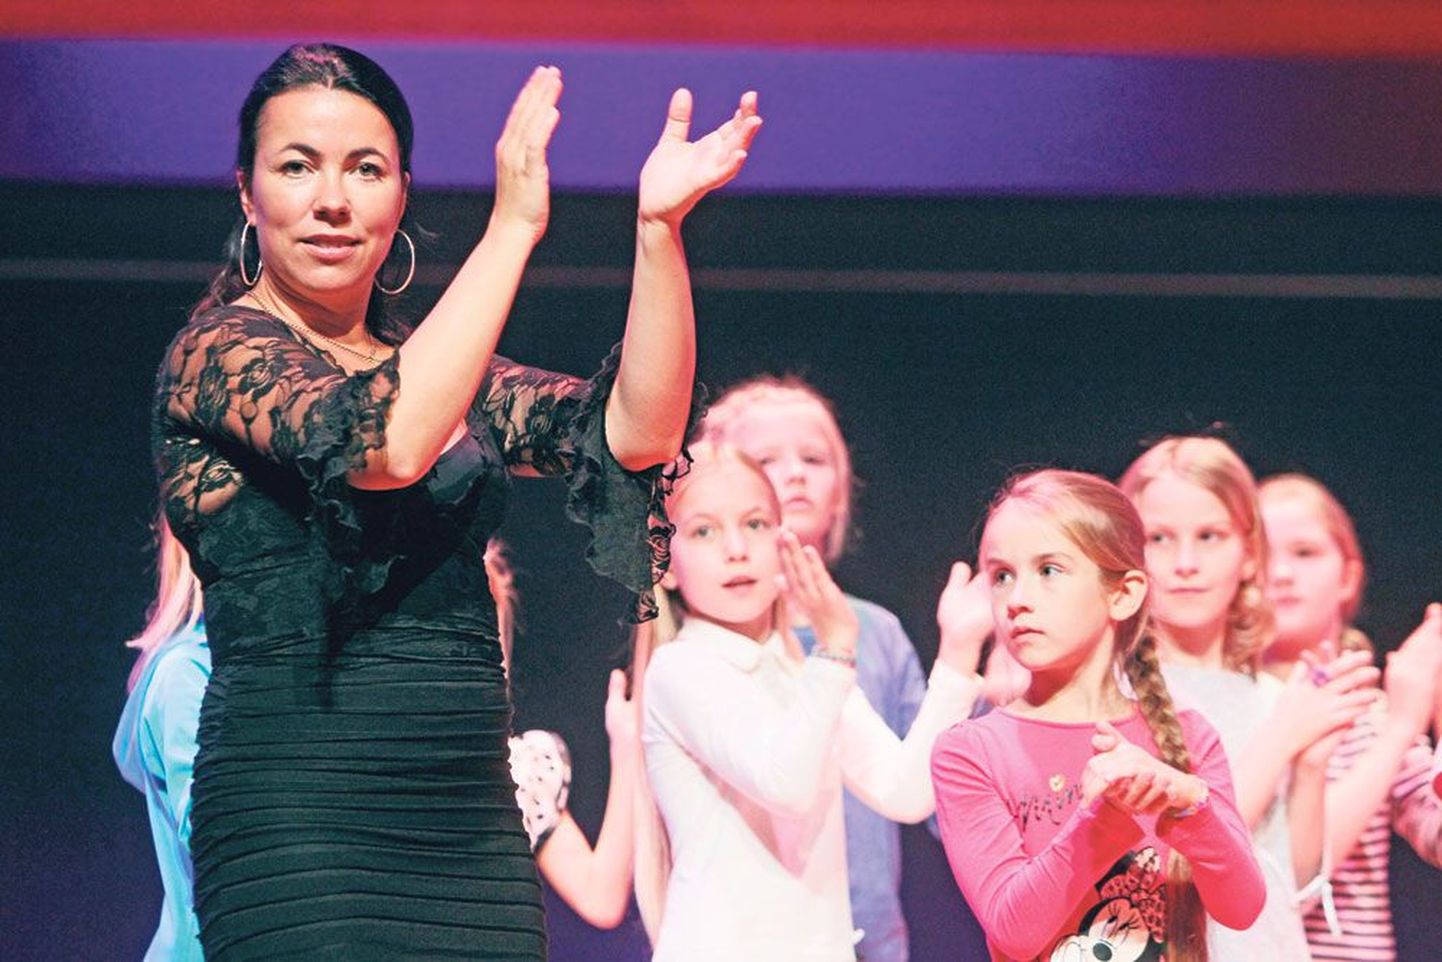 Stuudio Arte Flamenco tantsuõpetaja Maria Rääk tutvustab 23-le Tartu tüdrukule üht maailma raskeimat tantsustiili flamenkot. Õpetaja sõnul on lausa ime, et 45 minuti jooksul on üldse võimalik flamenkotantsust midagi õppida.